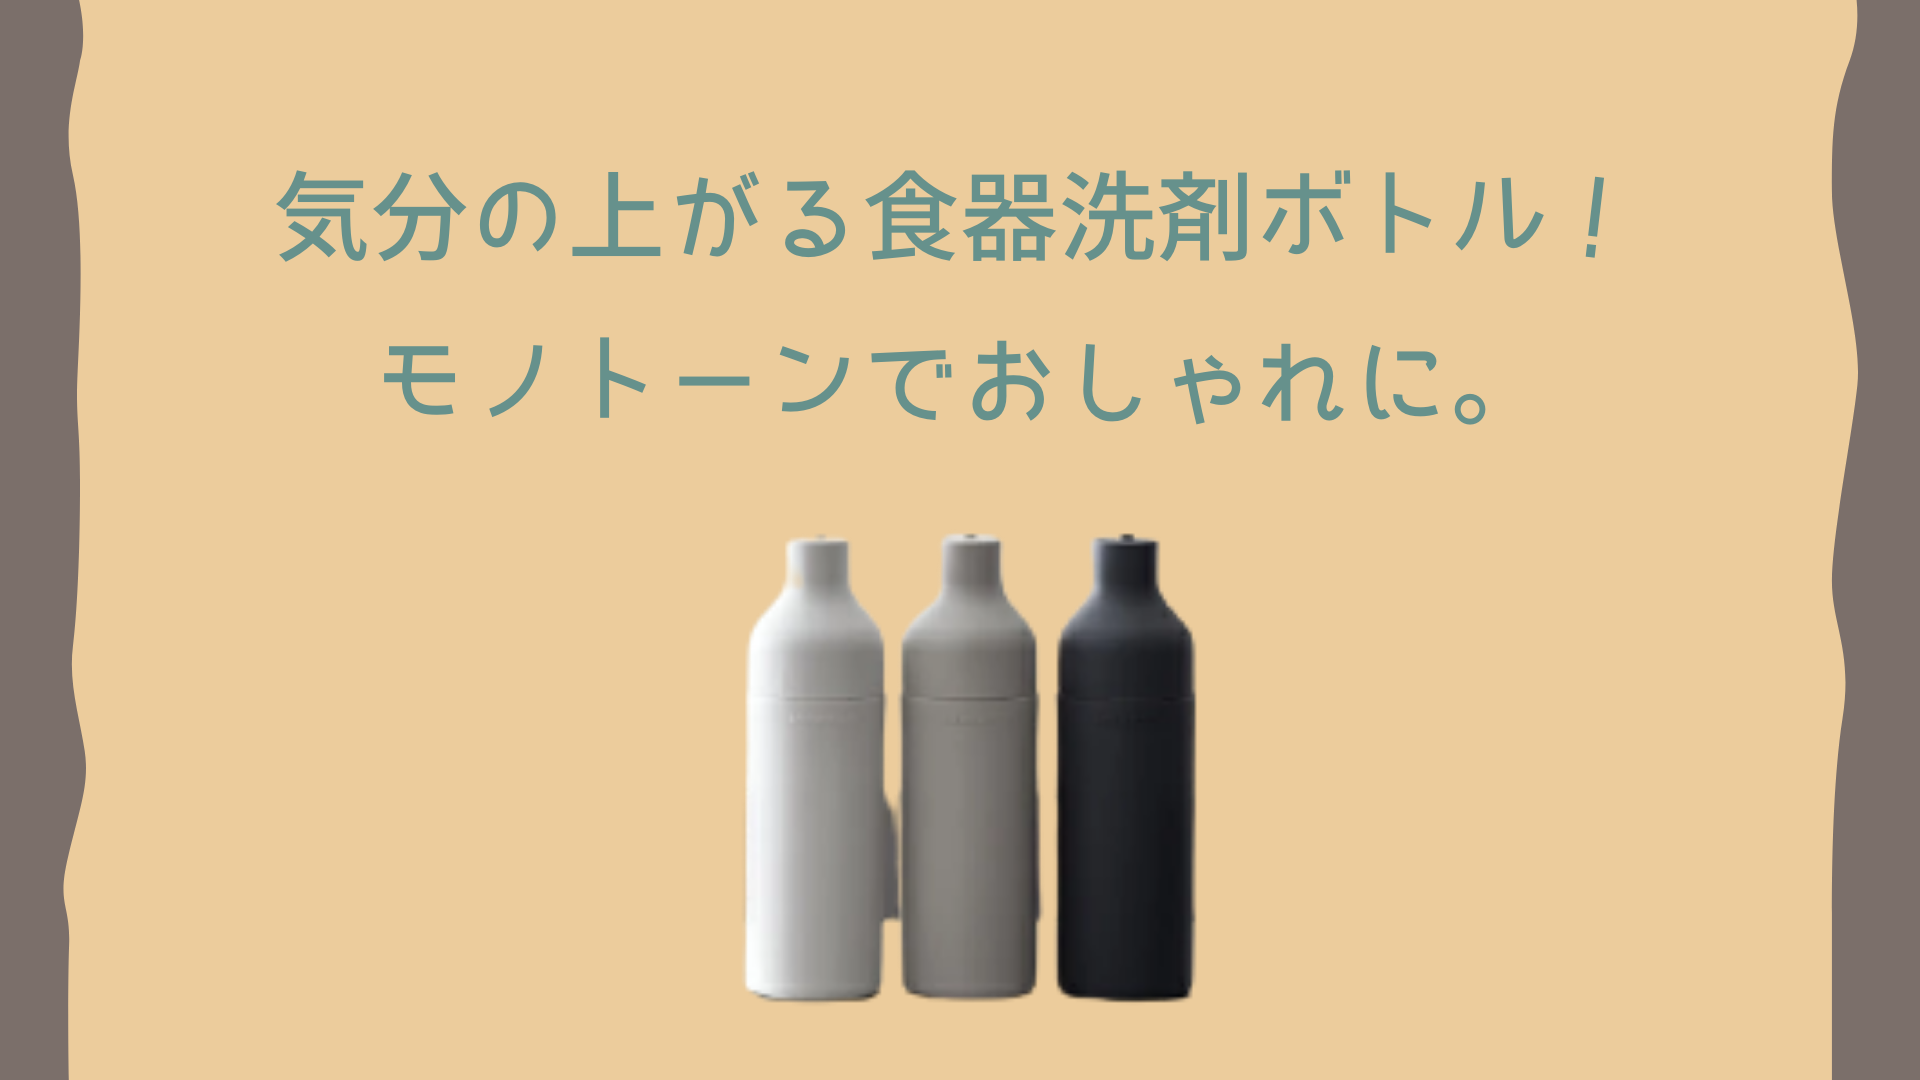 サラサデザインのおしゃれな洗剤ボトル B2c Squeeze Bottle モノトーンでおすすめ プチ贅沢な暮らし